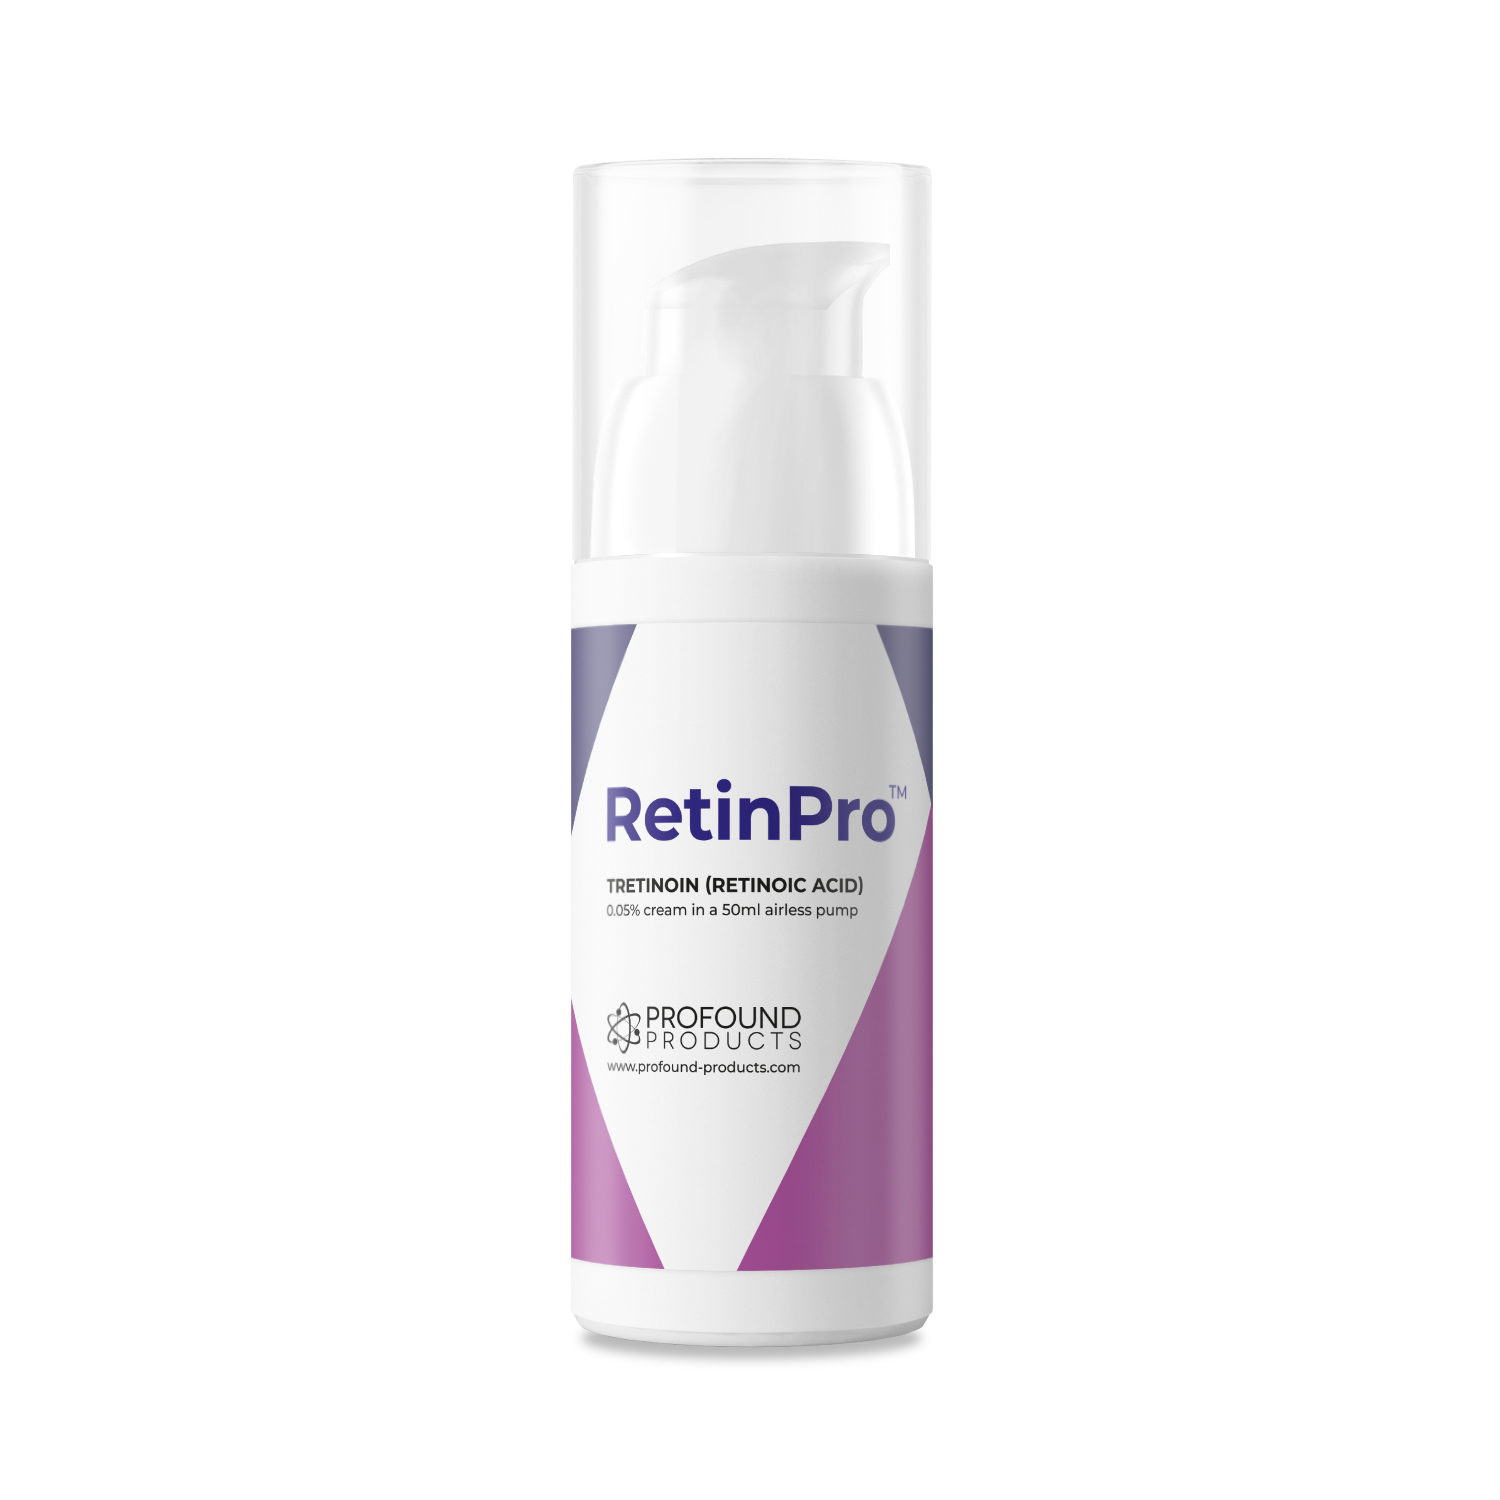 RetinPro™ Tretinoine Cream (retinoic acid)-1